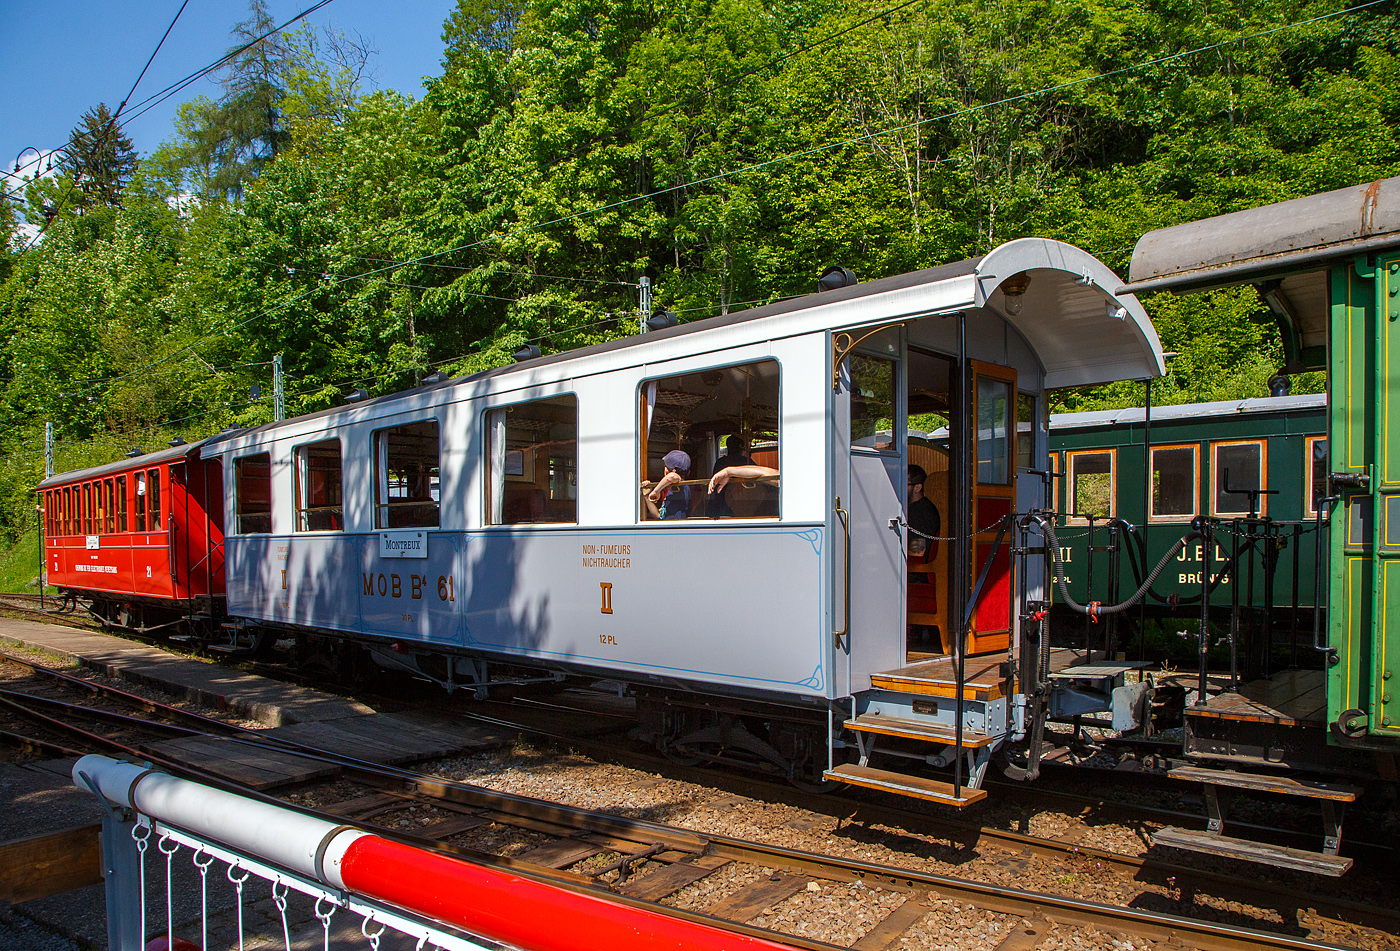 Der schmalspurige vierachsige zweite Klasse Personenwagen mit zwei Plattformen MOB B⁴ 61 seit 2016 als Geschenk von der Modellbahngruppe Obersimmental-Saanenland (MOS) bei der Museumsbahn Blonay–Chamby hier am 27 Mai 2023 im Zugverband im Museum Chaulin.

Der Wagen wurde 1906 SIG (Schweizerische Industriegesellschaft) in Neuhausen am Rheinfall als B⁴ 61 für die MOB (Montreux-Berner Oberland-Bahn) gebaut. 

Die beiden Wagen B⁴ 61 und B⁴ 62, die keine Toilette aufwiesen, wurden zusammen mit den Personenwagen BC⁴  23–26 beschafft. Grund war die Aufnahme des durchgehenden Betriebs auf der Strecke Montreux–Zweisimmen im Jahr 1905. Zudem wurden die Prognosen zur Zahl der Reisenden übertroffen. Nachdem die MOB anfänglich für die Reisezüge Drehgestell-Wagen beschafft hatte, folgten aus Kostengründen Zweiachser. Infolge von Reklamationen wechselte die MOB wiederum auf Drehgestell-Wagen, wobei es dann auch blieb.

Geschichte:
Ab 1901 in mehreren Etappen in Betrieb genommen, erreichte die Linie der Montreux-Berner Oberland (MOB) 1905 Zweisimmen. Neben der Erschließung durchquerte sie auch die bis dahin schwer zugänglichen Gebiete, insbesondere das kleine Dorf Gstaad. Das landwirtschaftliche Dorf verwandelt sich schnell in einen weltberühmten Bergkurort, es ermöglicht Touristen, die an der Waadtländer Riviera (der östlichen Teil des Nordufers des Genfersees) übernachten, direkt nach Spiez und dann nach Interlaken zu gelangen, ohne den Umweg über Bern zu machen, und gleichzeitig einen Ausflug inmitten außergewöhnlicher Panoramen zu genießen. Zudem war es damals wohl die schneller Strecke nach Spiez.

Zu diesem Zweck verband 1910 eine Expressverbindung mit Anschluss Zweisimmen Montreux in nur 4 Stunden über eine Strecke von 114 km mit Interlaken. Dieser als „Montreux-Simmenthal-Express“ bezeichnete Zug fuhr mit einem Speisewagen sowie mit Wagen der 1. Wagenklasse, was damals auf einer Nebenbahn sehr selten war. Insgesamt war das Rollmaterial von Anfang an mit einem hohen Maß an Komfort ausgestattet, wie der „B 61“, mit 30 Sitzplätzen (Polstersessel) in der 2. Klasse. Wie damals üblich war in allen Zügen auch eine dritte Klasse mit Holzbänken vorhanden; 1956 wurde das System auf europäischer Ebene mit 2 Klassen vereinheitlicht. Die bequemen historischen Polstersessel wurden dann 1956 durch Holzbänke ersetzt, dadurch hatte der Wagen nun 40 Sitzplätzen in der „neuen“ 2. Klasse. Der „B 61“ beendete seine „aktive“ Karriere bei der MOB Ende der 1979 im Regionalverkehr, insbesondere zwischen Montreux und Les Avants. Er wurde 1979 für 100 Franken an die MOS - Modellbahngruppe Obersimmental-Saanenland (MOS) verkauft. Die MOS nutzte ihn von 1979 bis 2015 als Vereinslokal in Saanen, zusammen mit dem 1995 übernommenen ursprünglichen MOB BFZe 4/4 26 und K 529. 2015 musste die Modellbahngruppe (heute aufgelöst) den Standort in Saanen infolge Sanierung der Bahnstrecke und des Bahnhofes aufgeben und verlegte diesen nach Zweisimmen. Sie schenkte in der Folge 2016 den Wagen B⁴ 61 (ohne Inneneinrichtung) der Museumsbahn Blonay–Chamby. Bei der BC wurde er komplett überholt und in den Originalzustand, einschließlich der bequemen historischen Polstersessel, versetzt. Am 10. Mai 2018, anlässlich des „Mega Steam Festival“ dem 50-jährigenJubiläums der BC wurde er in Dienst gestellt und präsentiert. 
TECHNISCHE DATEN:
Hersteller: SIG (1906) 
Spurweite: 1.000 mm (Meterspur)
Achsanzahl: 4 (in 2 Drehgestellen)
Länge über Puffer: 11.630 mm 
Länge Wagenkaten: 10.630
Höhe / Breite: 3.600 mm / 2.700 mm
Drehzapfenabstand: 6.500 mm 
Achsabstand im Drehgestellt: 1.200 mm
Drehgestelle Typ: SIG, einfache Federung
Laufraddurchmesser: 750 mm (neu)
Eigengewicht: 9.800 kg
Sitzplätze: 30 (40 mit Holzbänken von 1956 bis 1979)
Höchstgeschwindigkeit: 50 km/h
Kupplungen: Mittelpuffer mit einer Schraubenkupplungen (Zp 1)

Quellen: Museumsbahn BC, x-rail.ch und wikipedia
